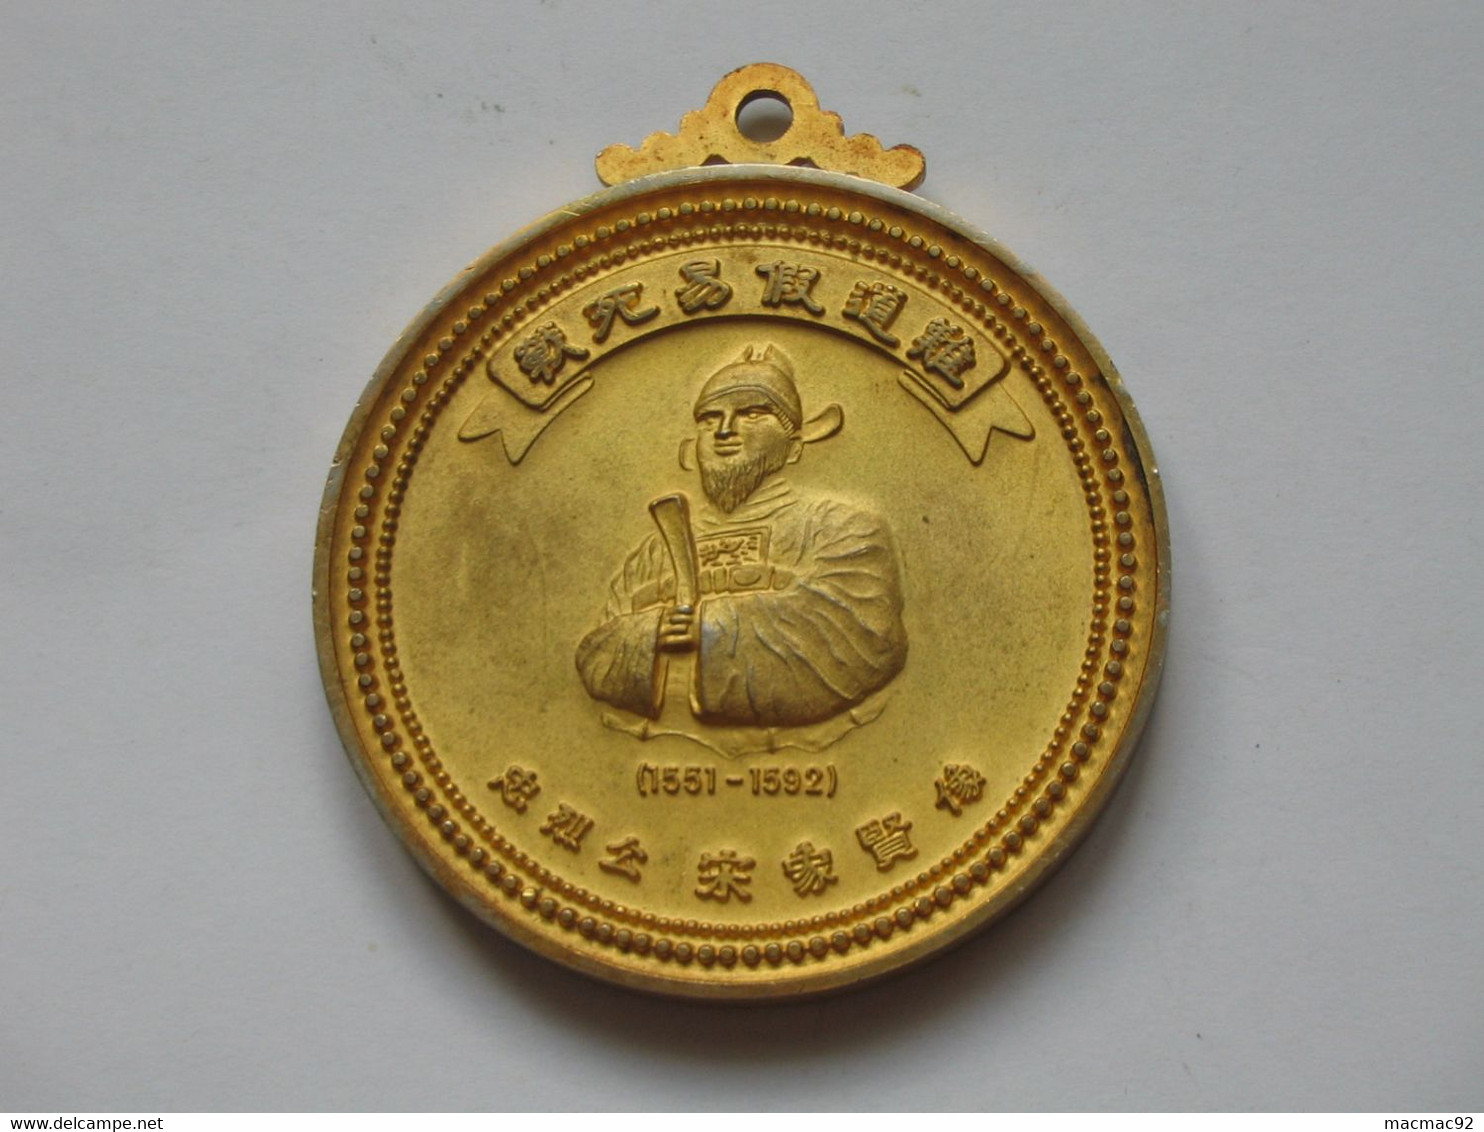 MAGNIFIQUE Médaille - WELCOME TO PUSAN REPUBLIC OF KOREA - MAYOR OF PUSAN  **** EN ACHAT IMMEDIAT  **** - Royaux / De Noblesse